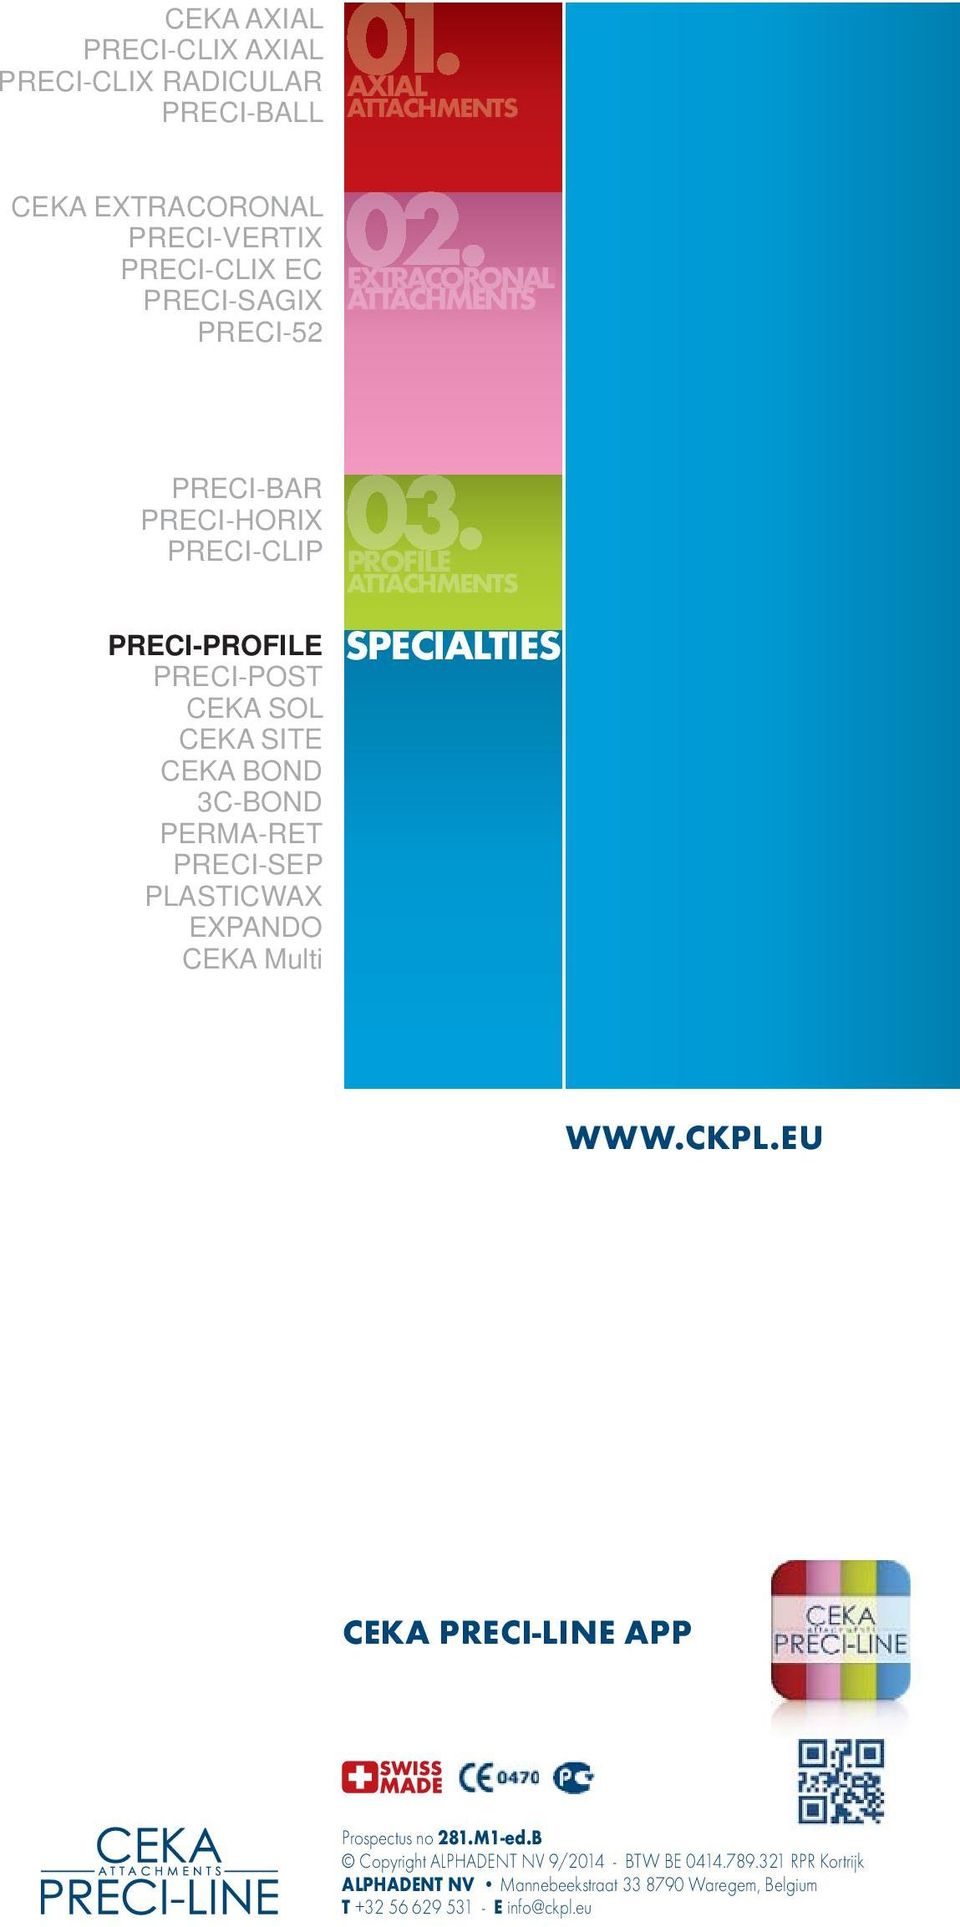 PERMA-RET PRECI-SEP PLASTICWAX EXPANDO CEKA Multi PROFILE ATTACHMENTS SPECIALTIES WWW.CKPL.EU CEKA PRECI-LINE APP Prospectus no 281.M1-ed.